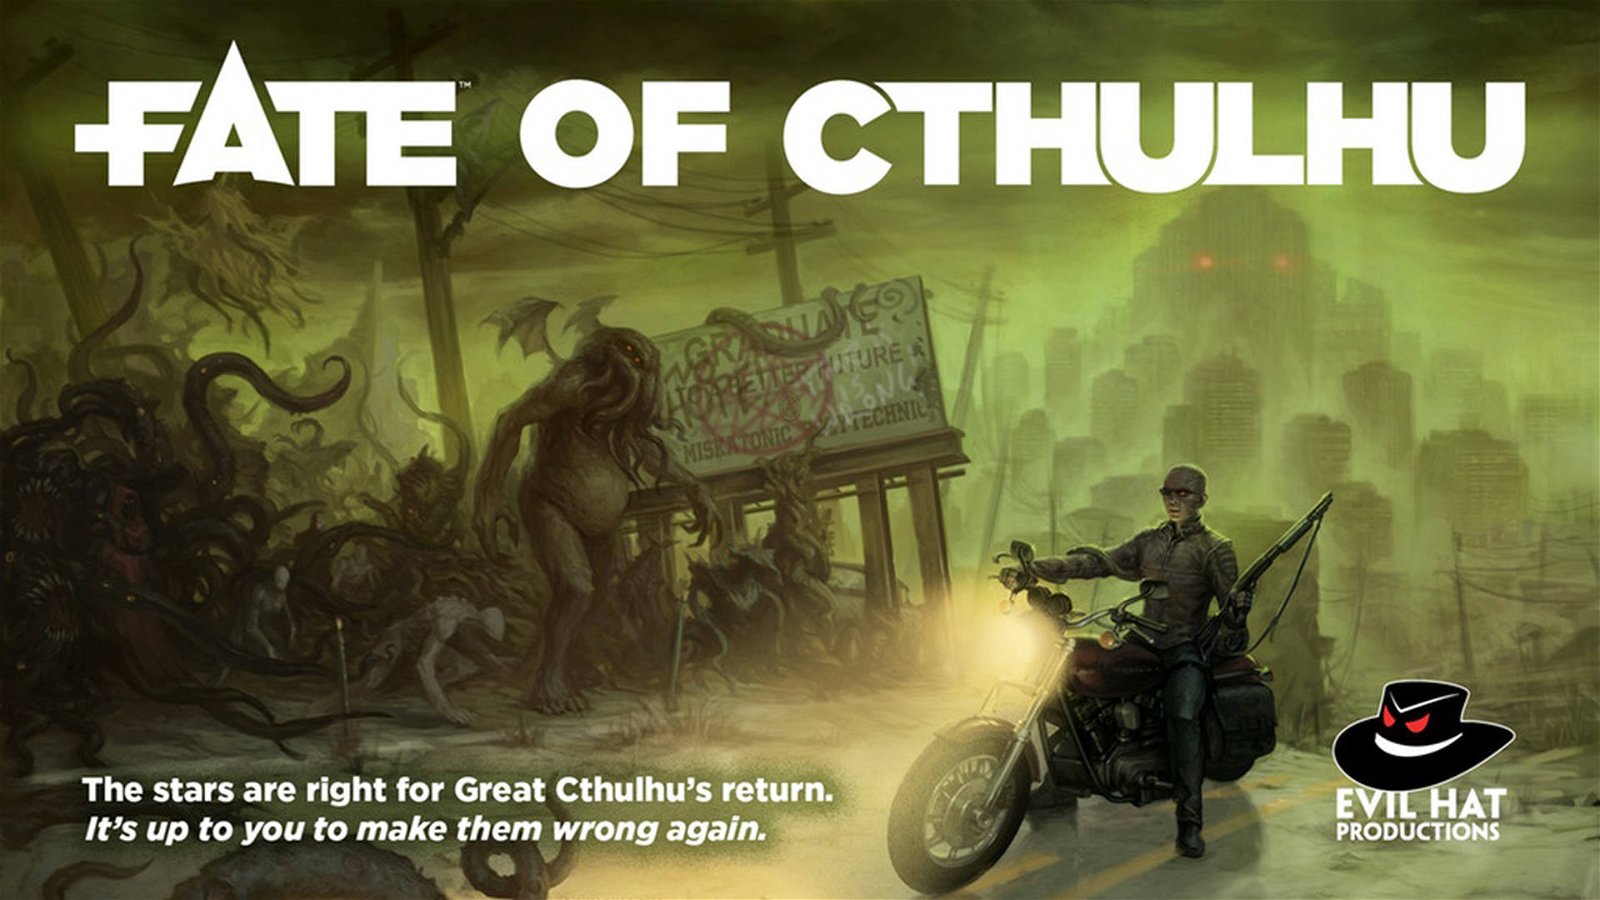 Immagine di Fate of Cthulhu, un Kickstarter per i Grandi Antichi